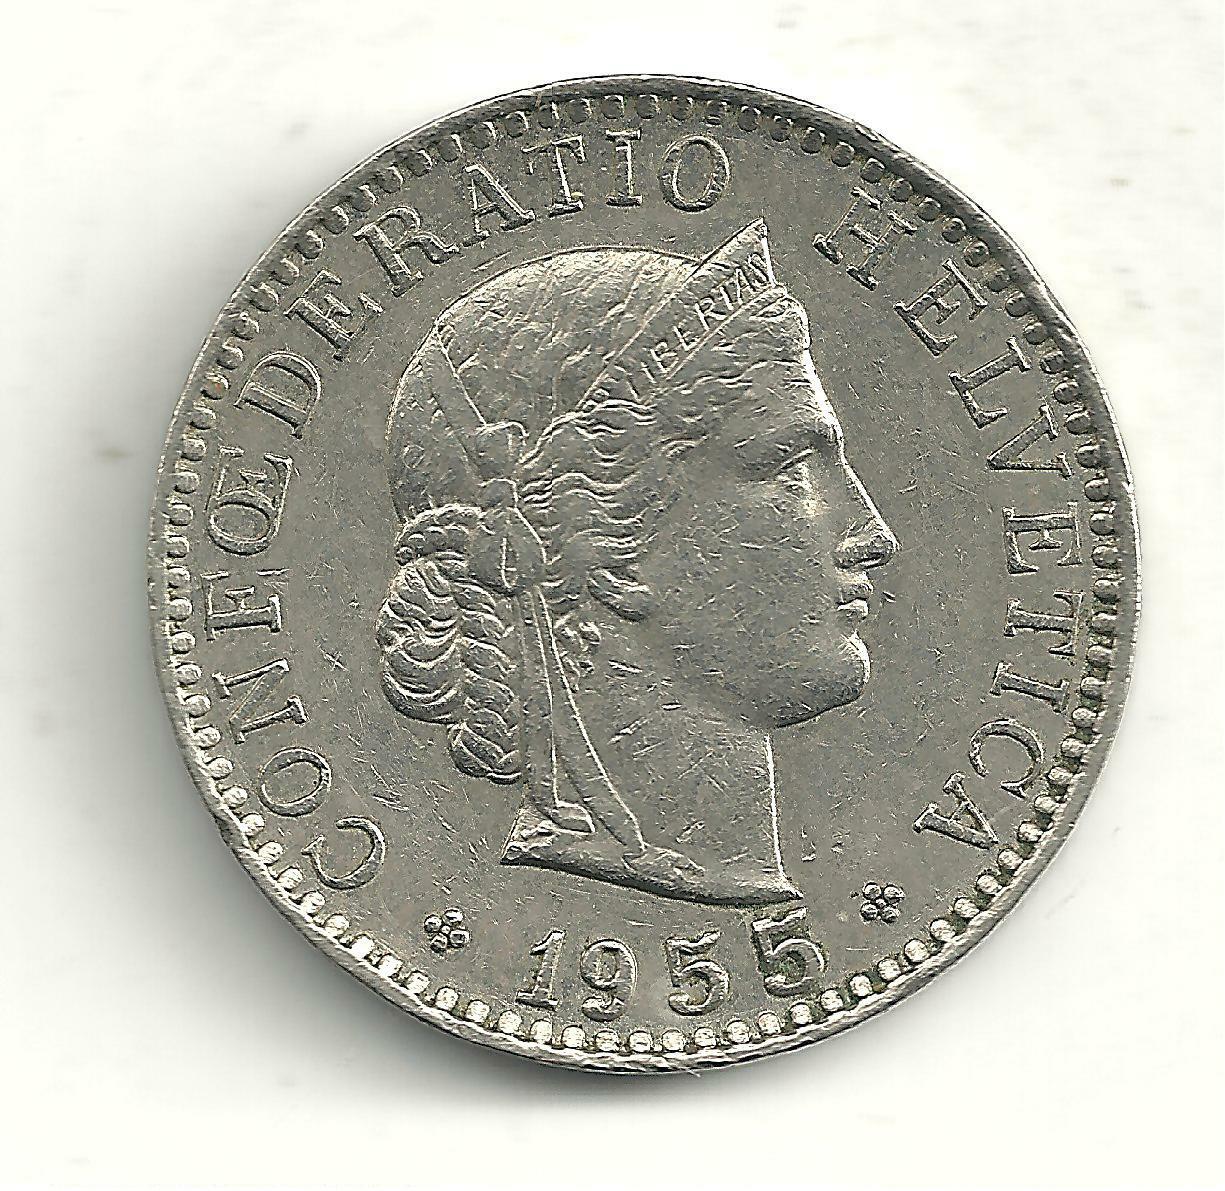 Higher Grade 1955 B Switzerland 20 Rappen Coin-a925